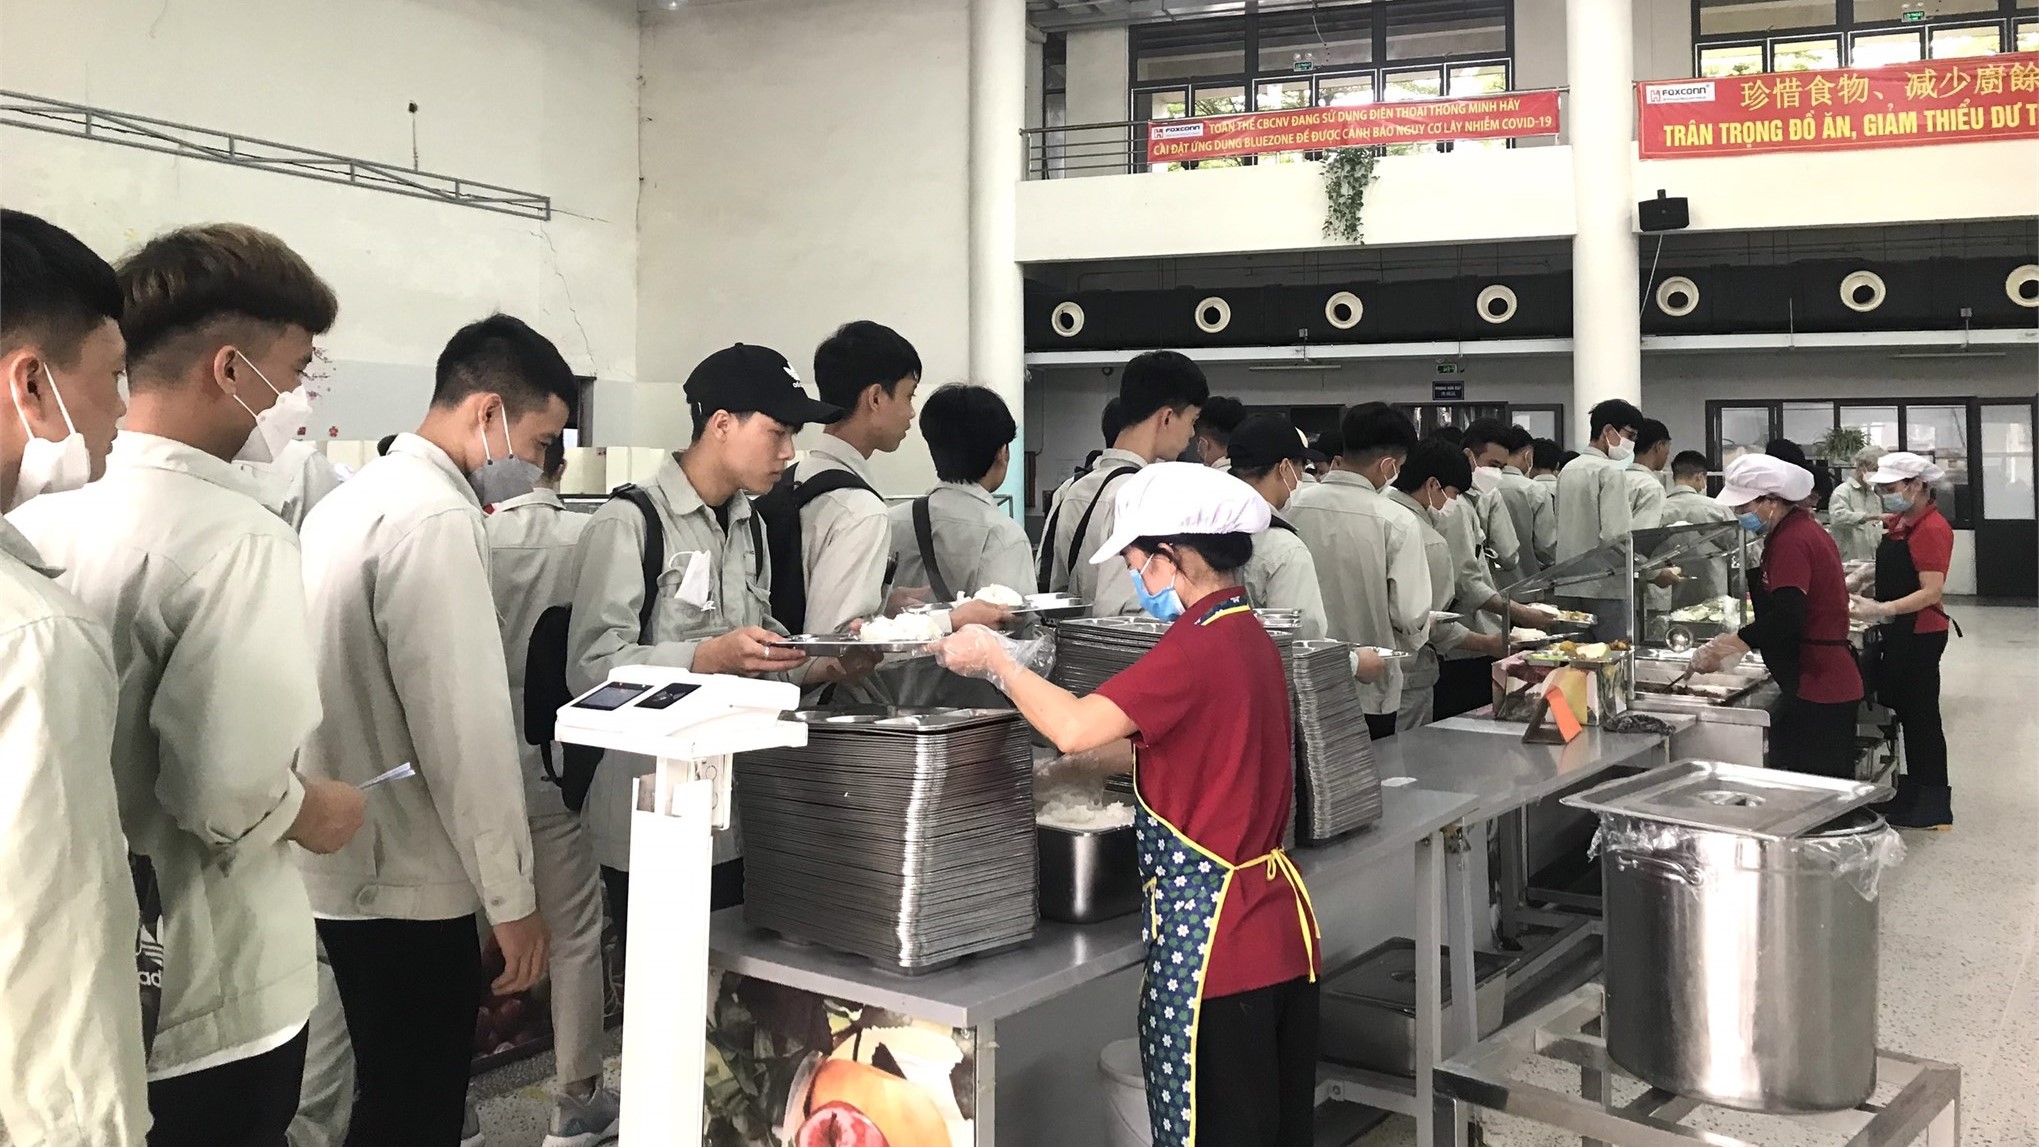 Hơn 100 sinh viên Trung tâm Việt Nhật trải nghiệm môi trường làm việc tại Tập đoàn Khoa học Kĩ thuật Hồng Hải (Foxconn)